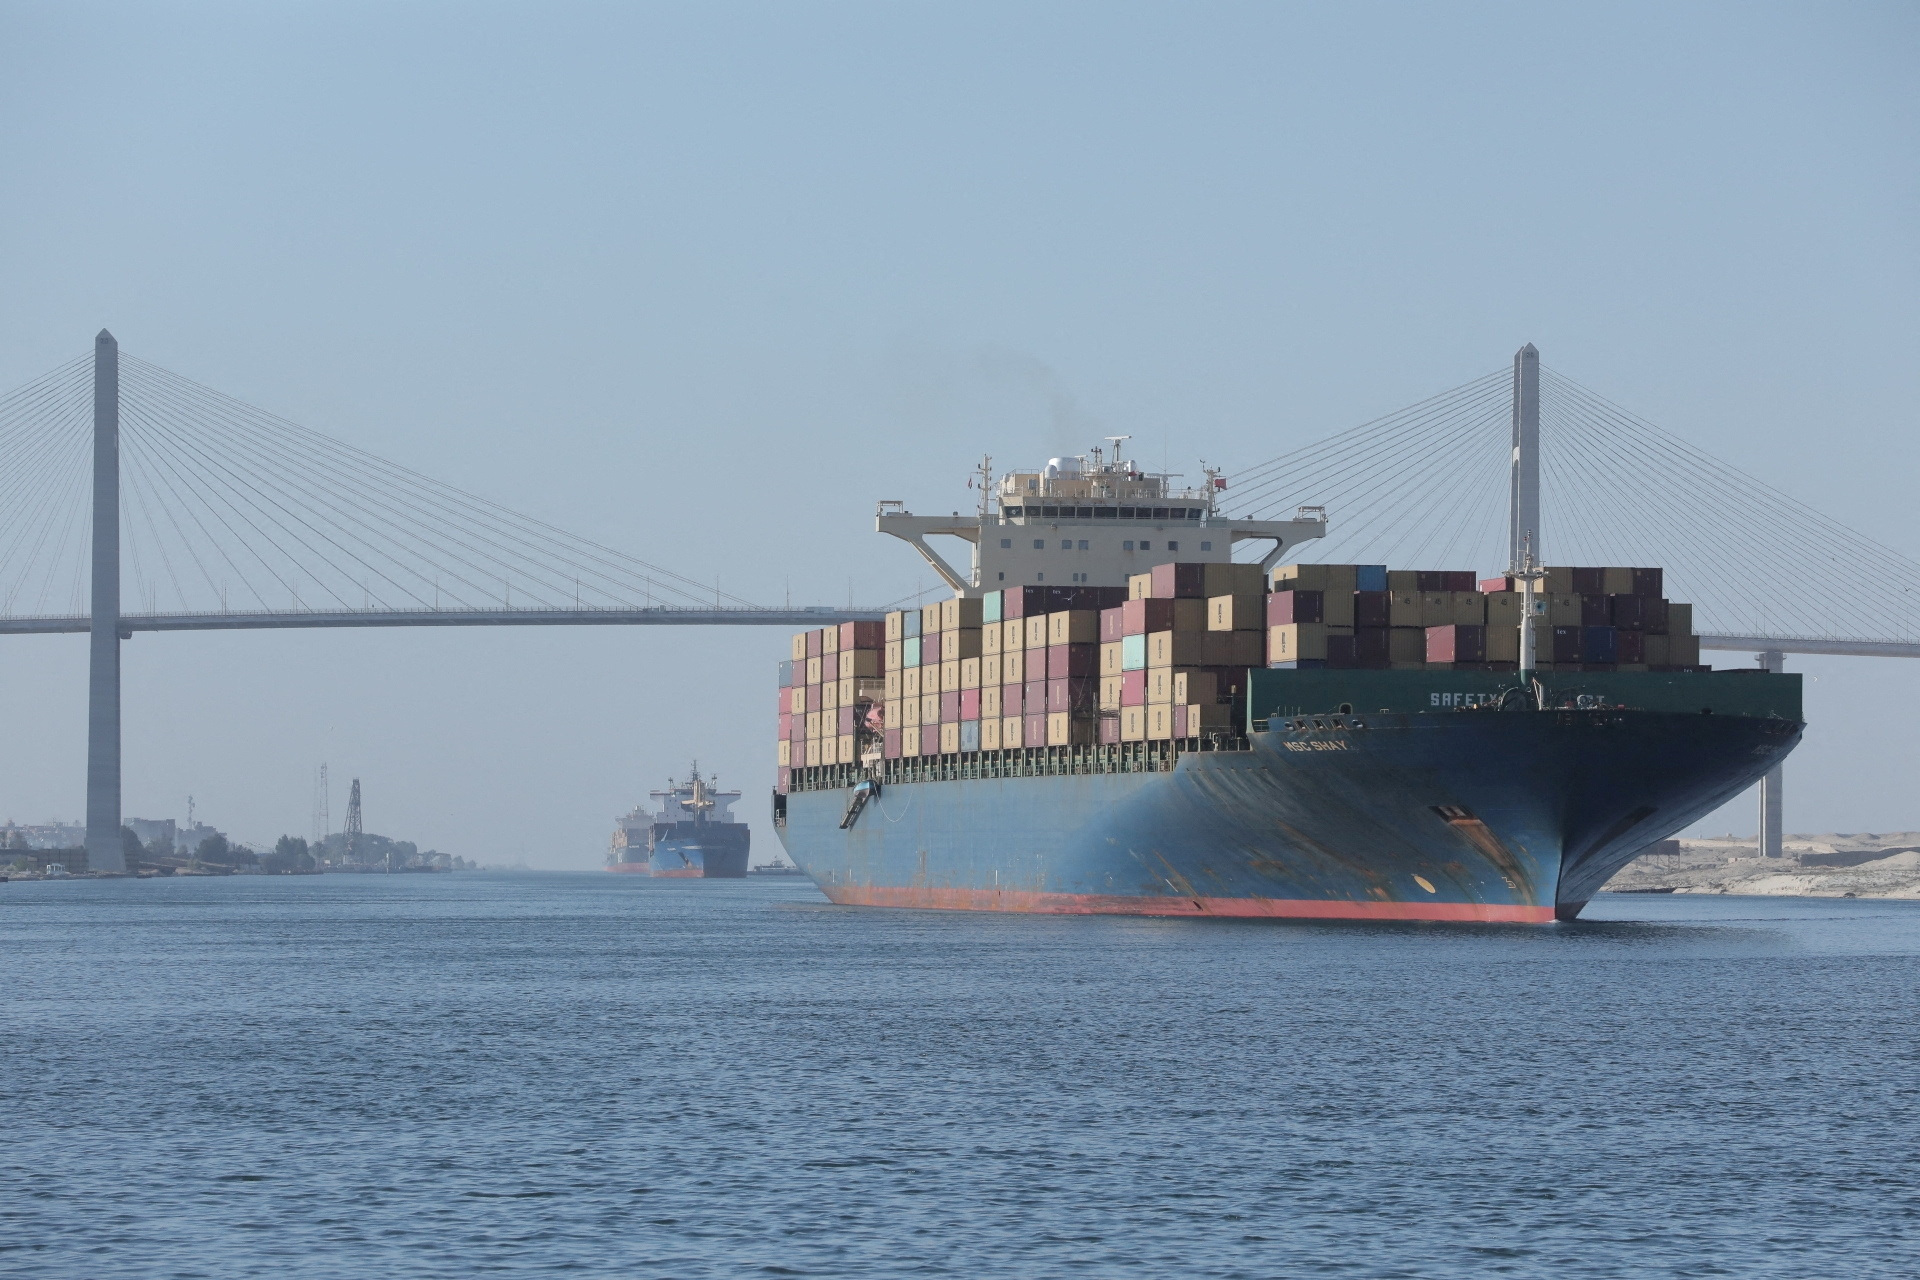 Κρίσιμη η κατάσταση για την ναυτιλία στην Ερυθρά Θάλασσα - Ποιες εταιρείες την αποφεύγουν